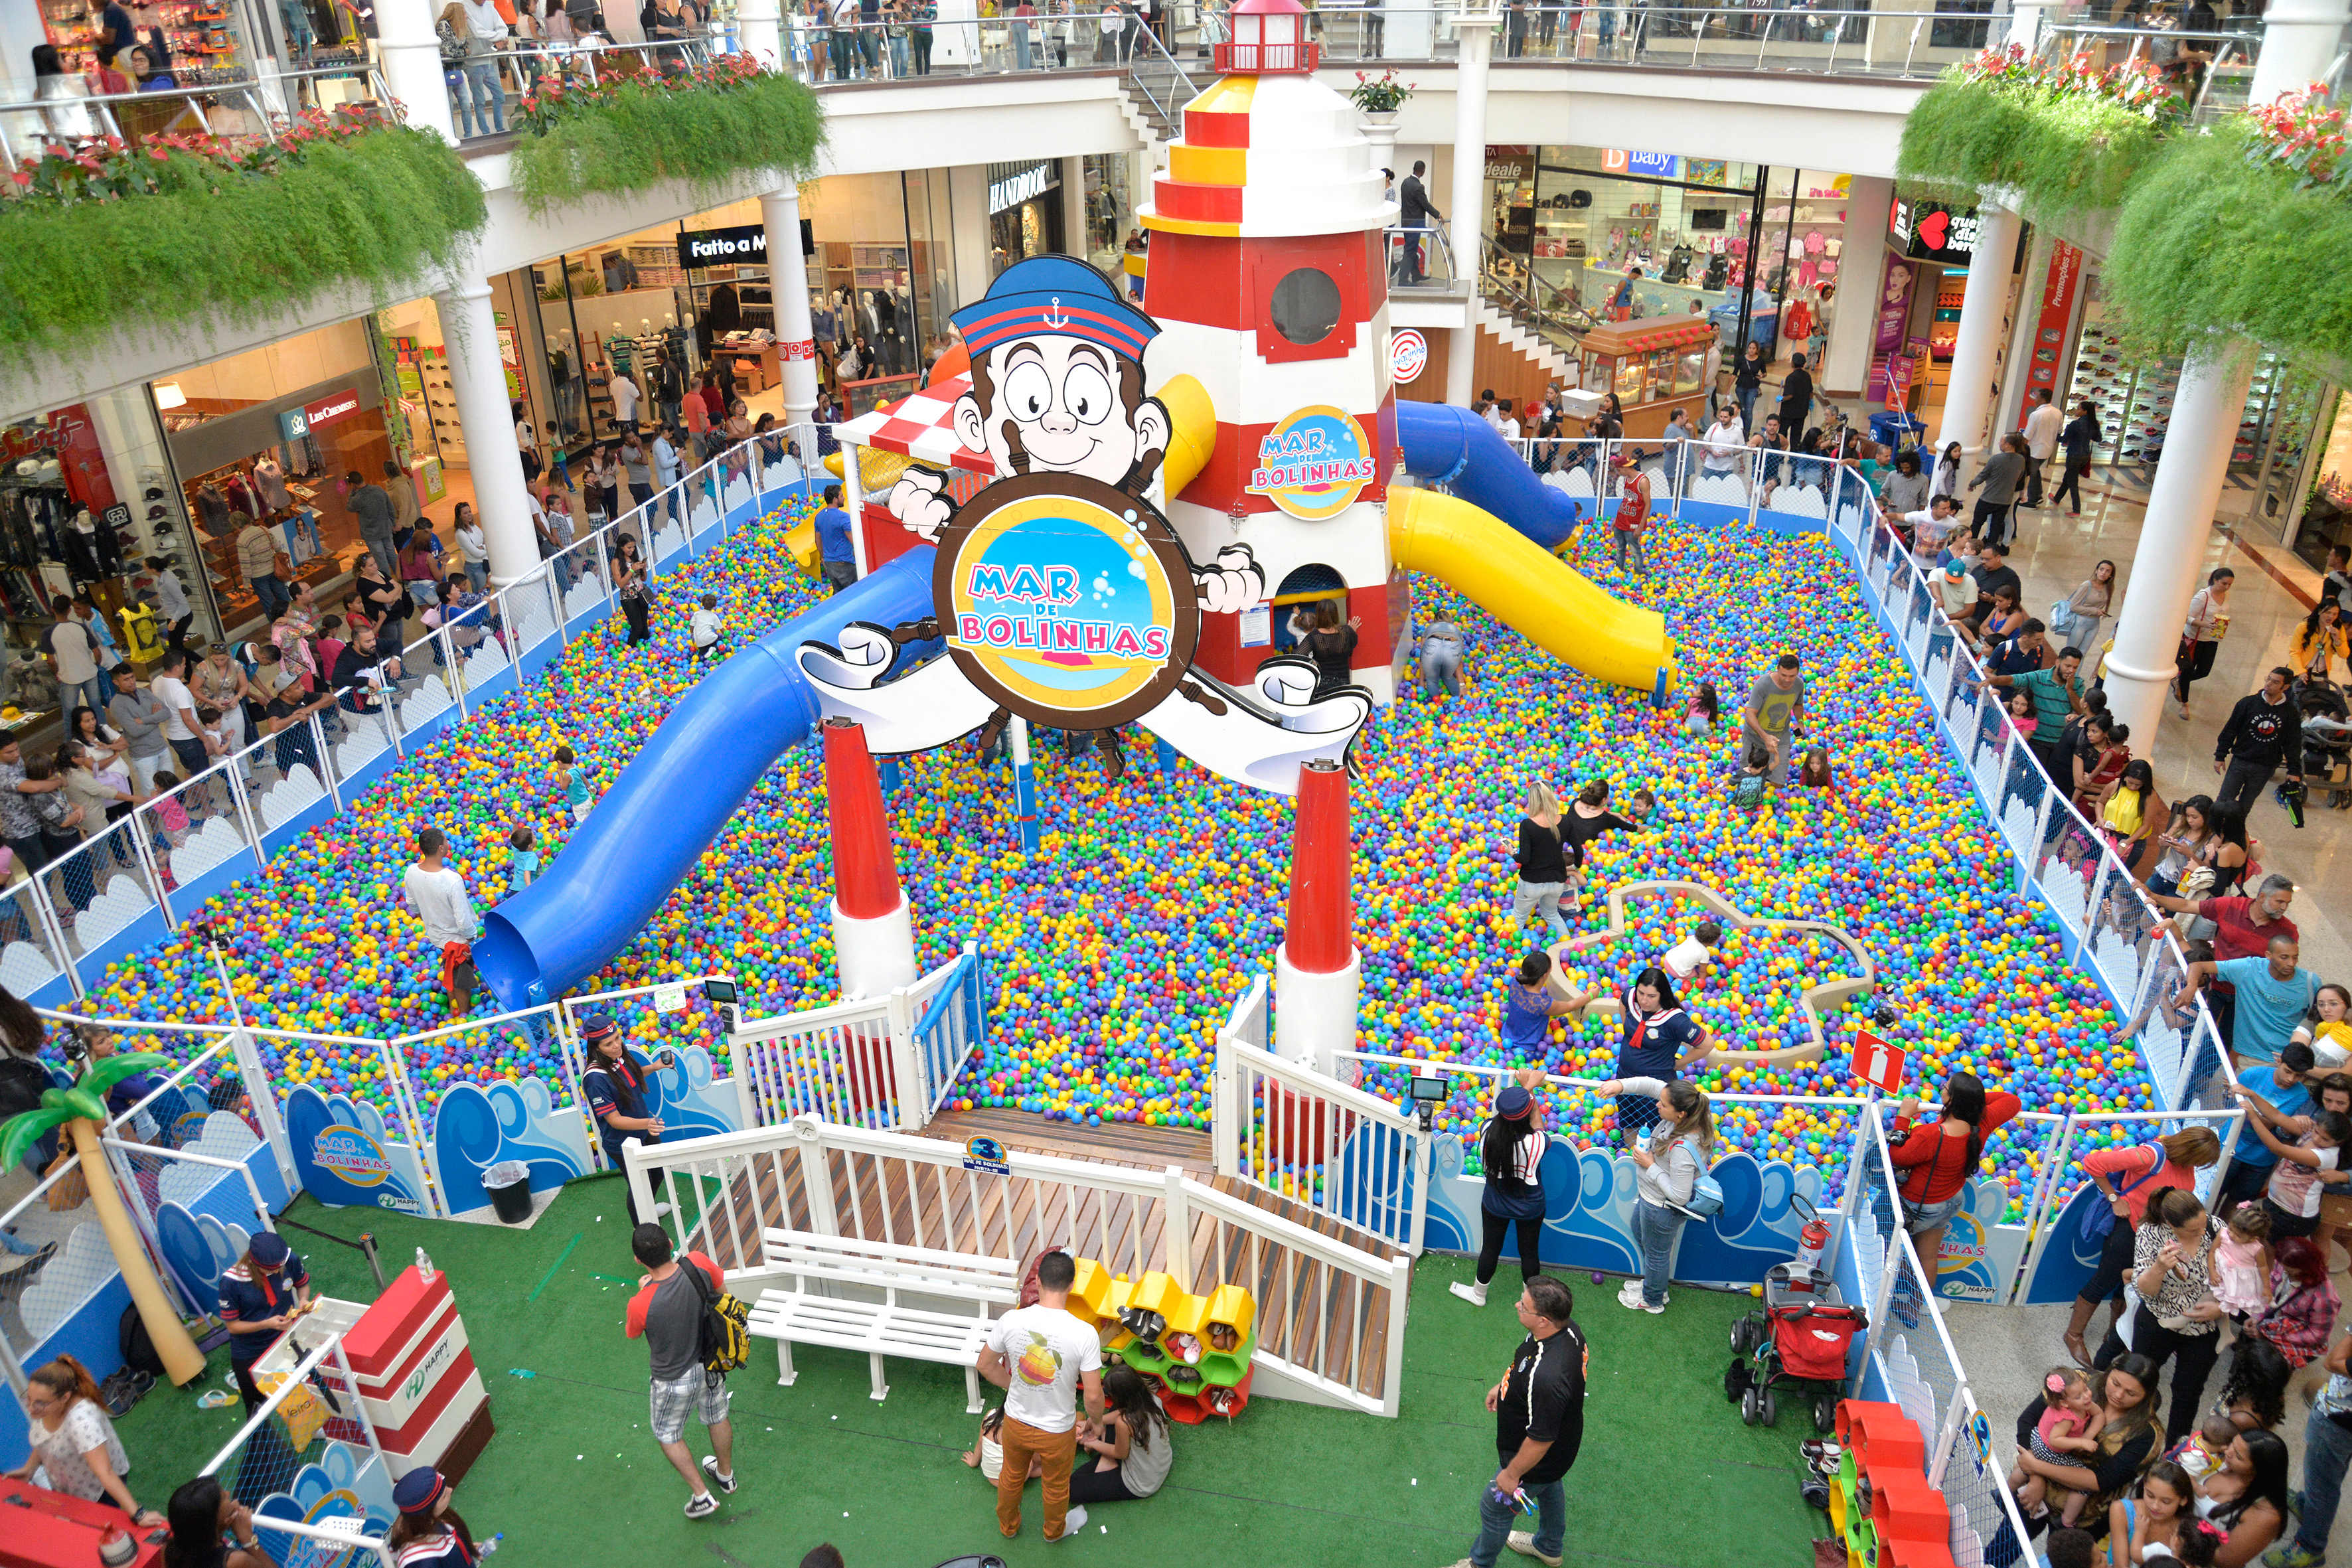 Shopping de Manaus dá início a Circuito de Férias, com diversas atrações